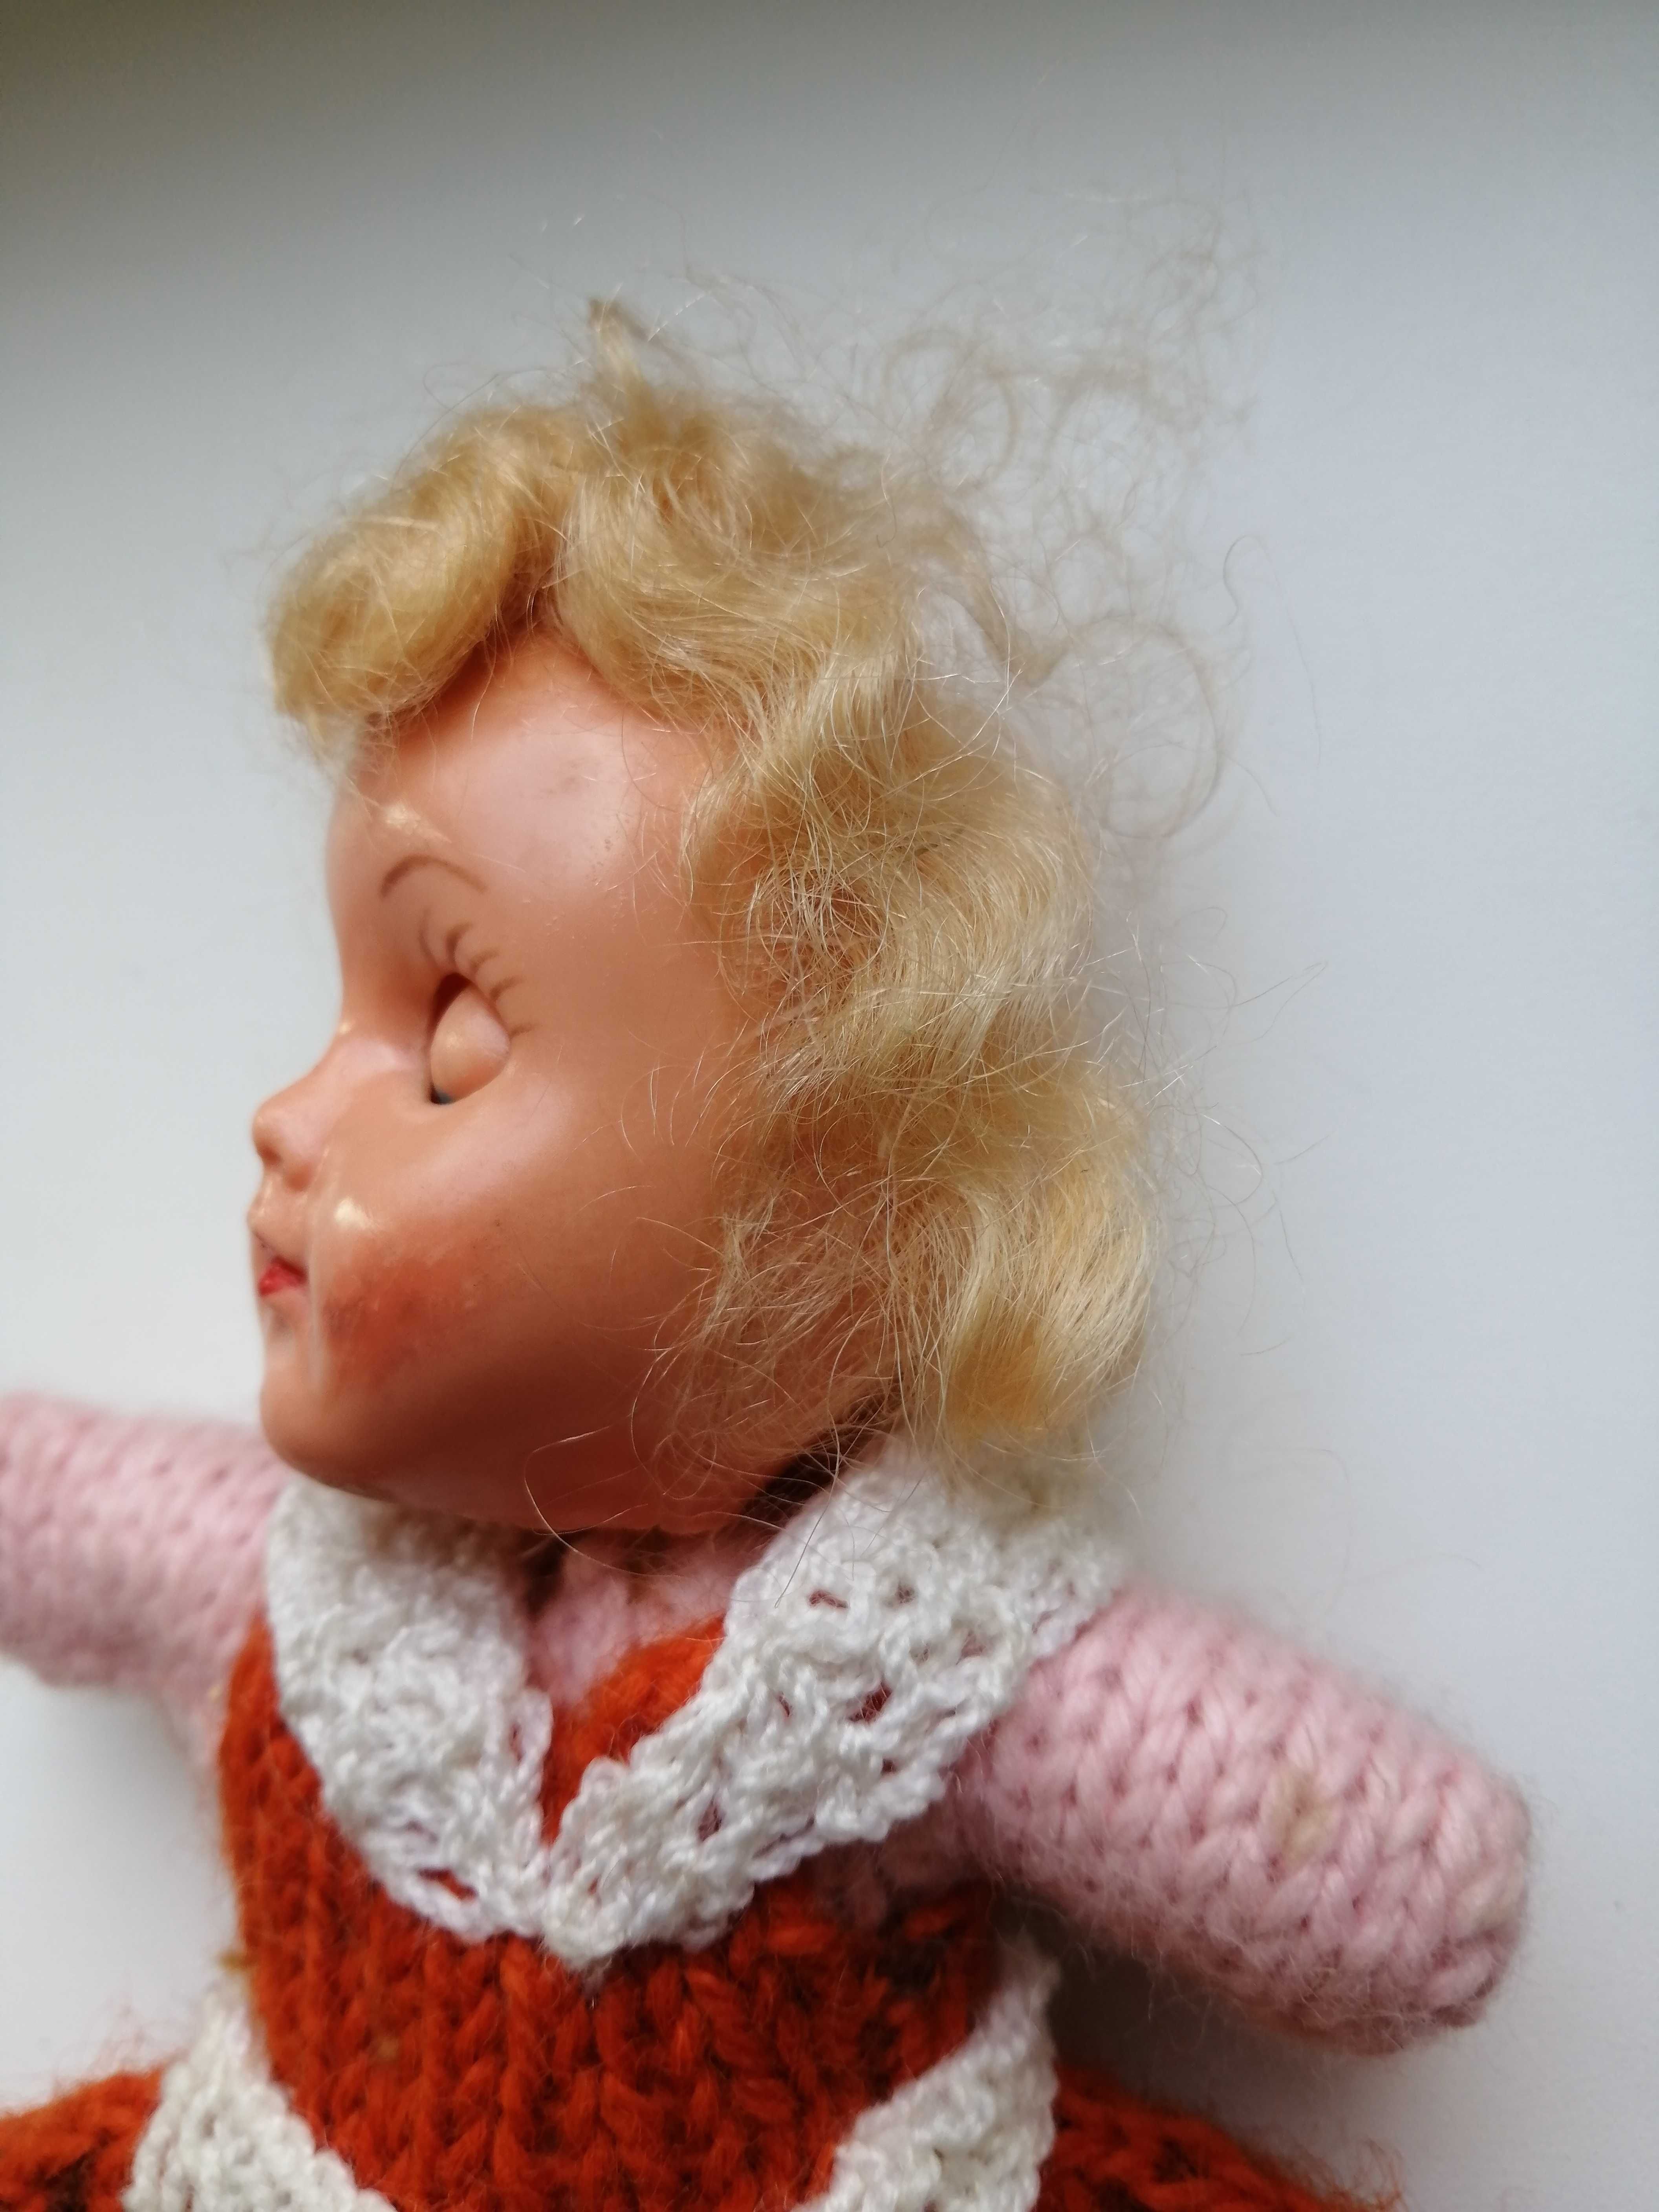 Кукла старая винтажная целлулоидная вінтажна на чайник голова куклы